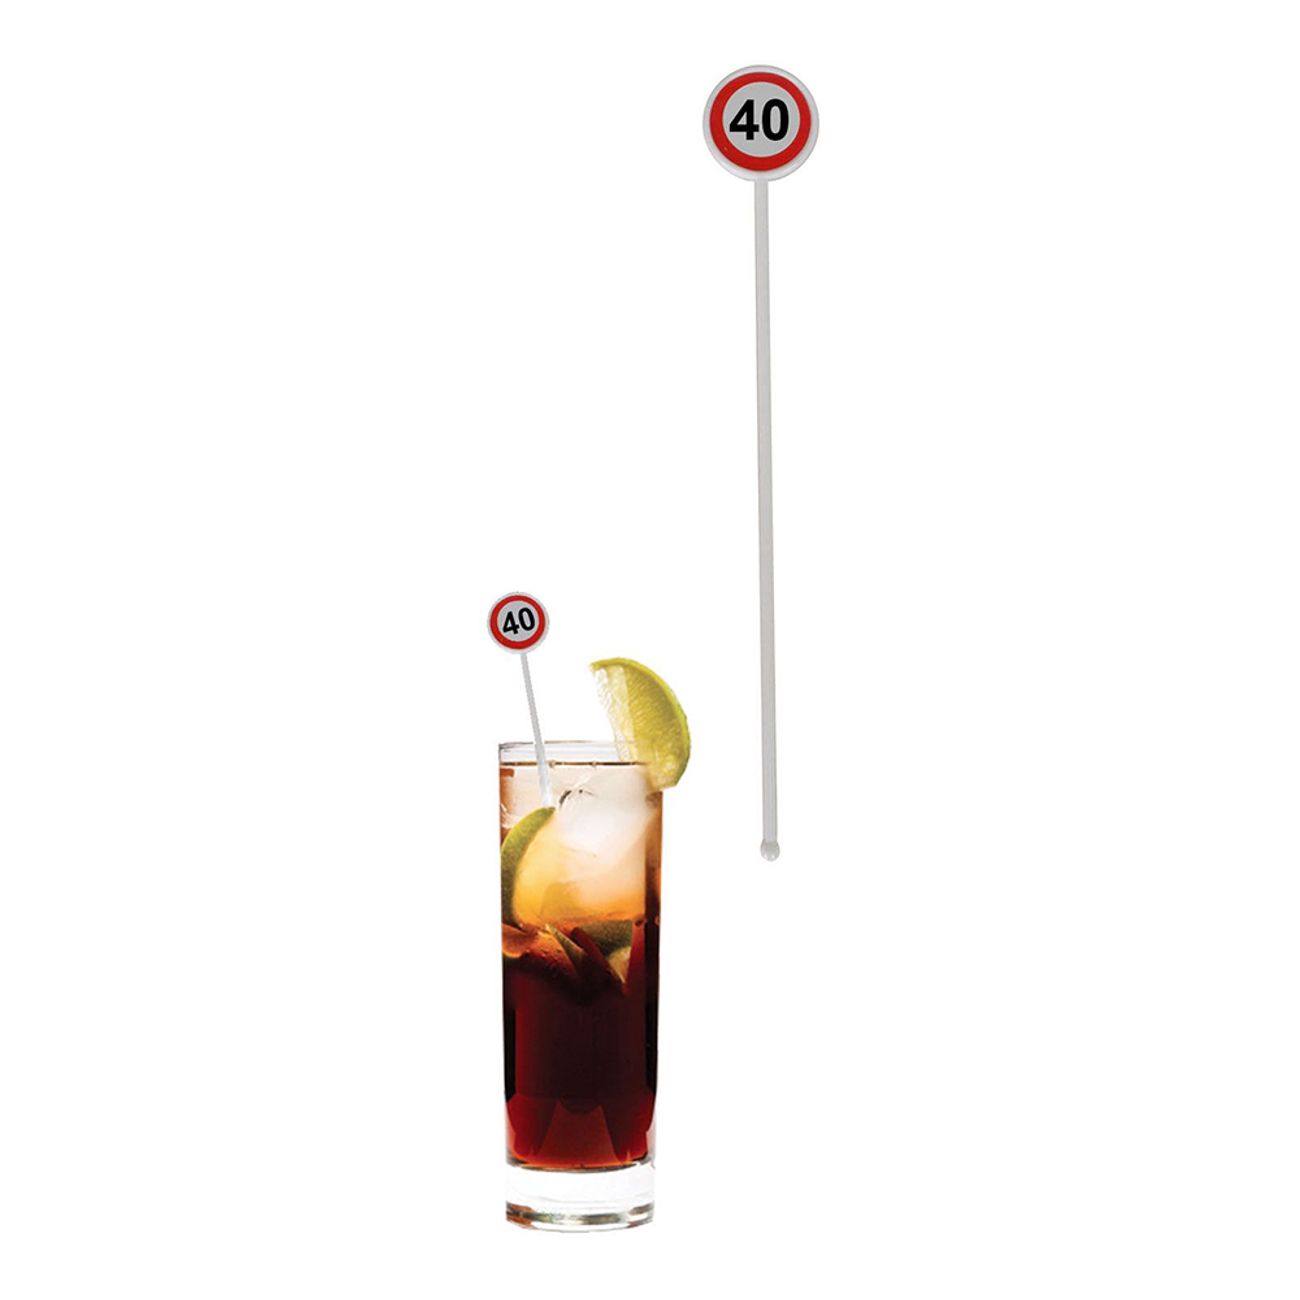 drinkpinnar-trafikskylt-40-1